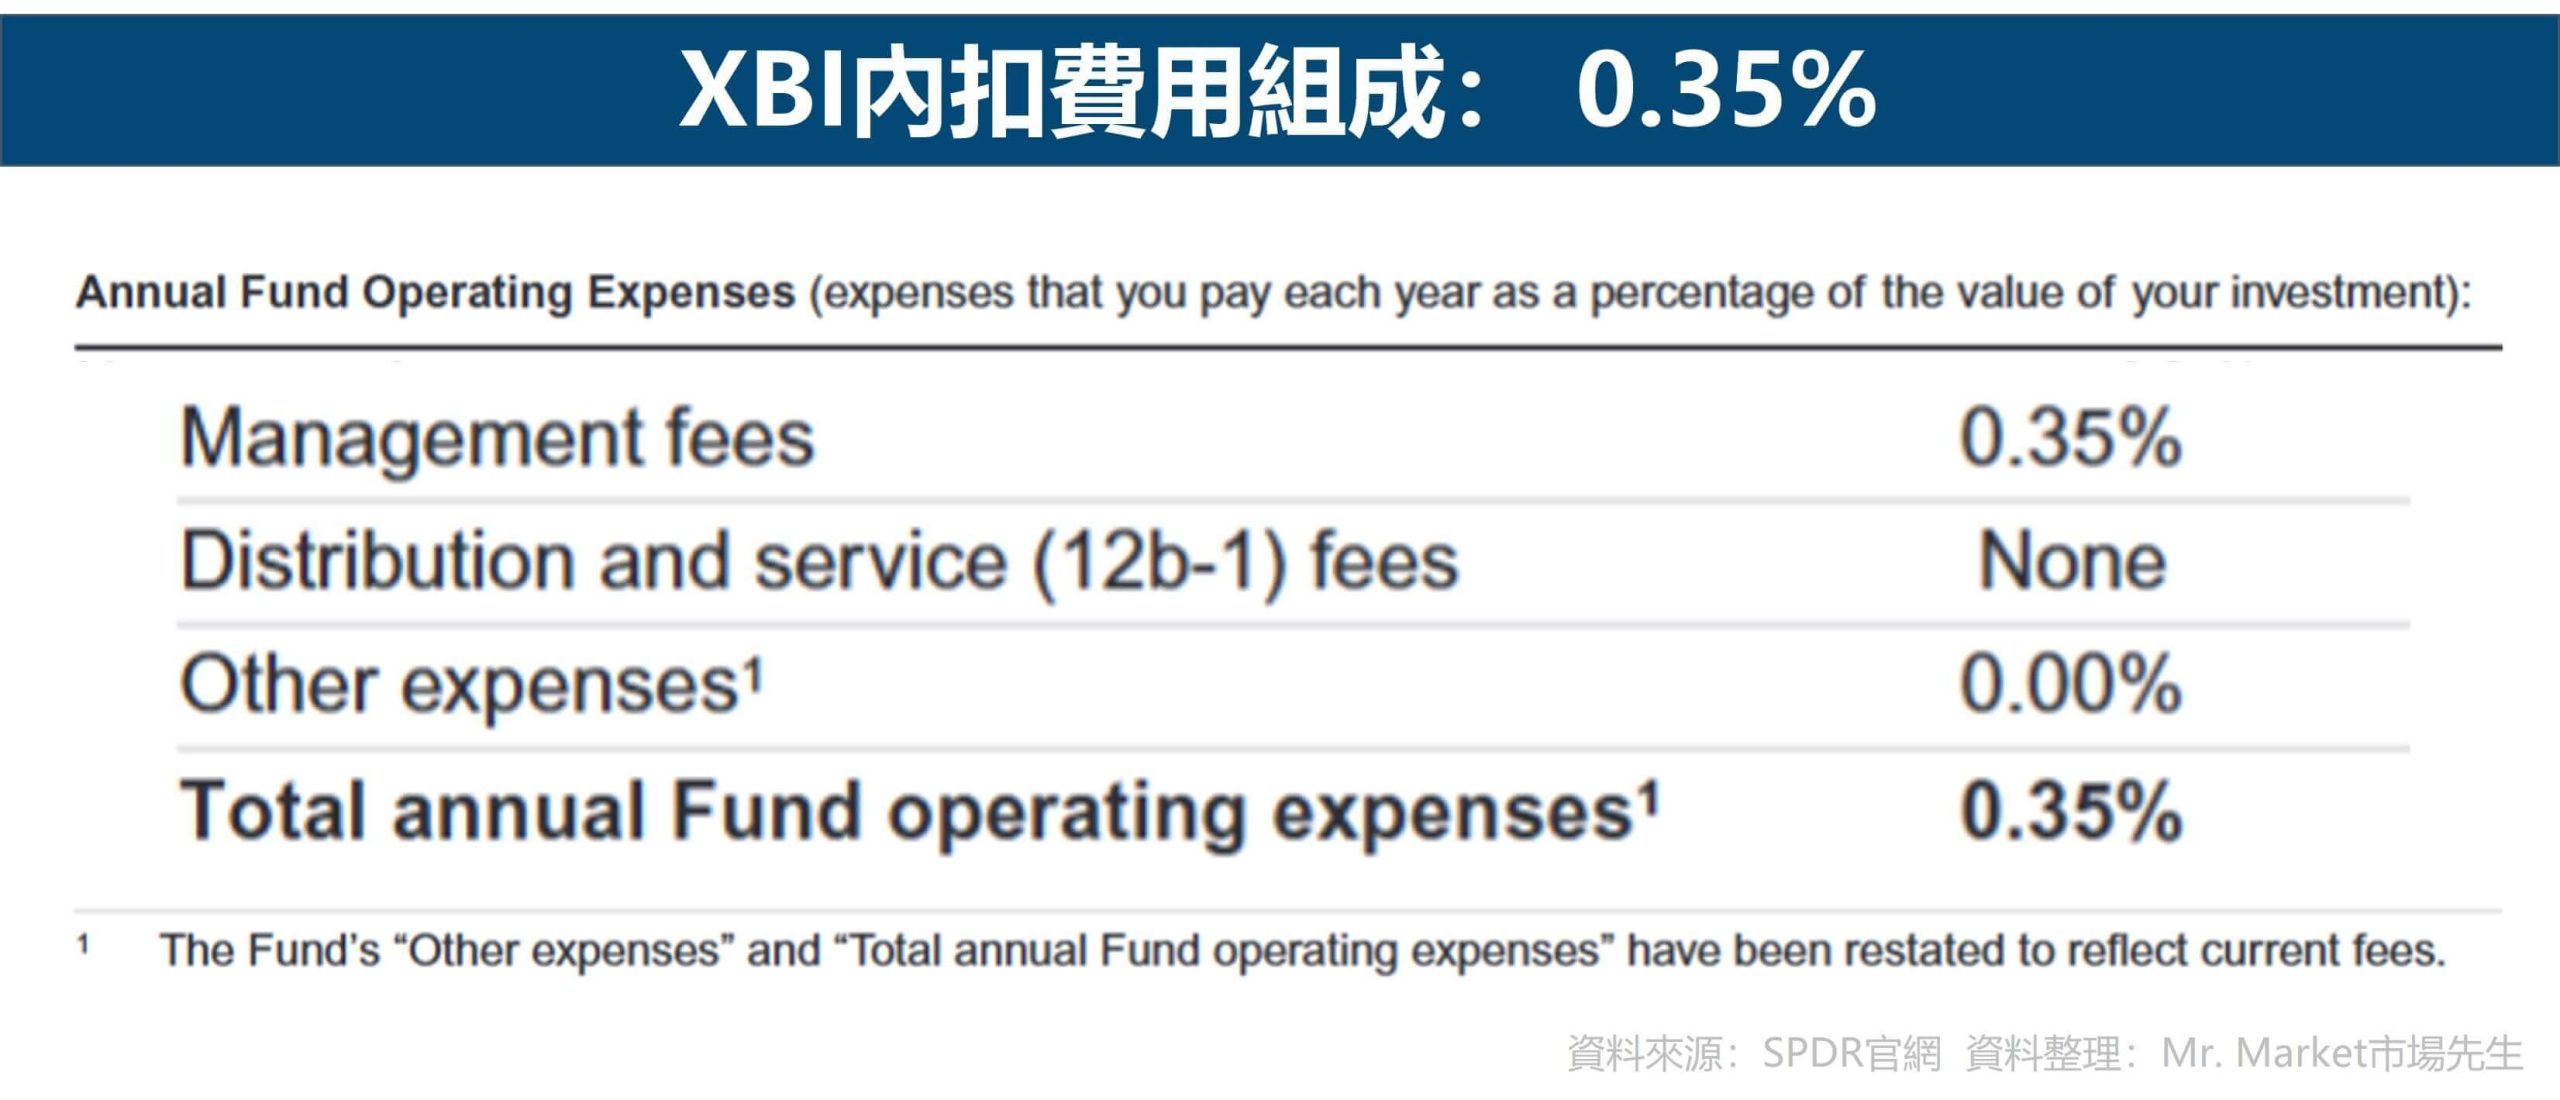 XBI內扣費用組成： 0.35%